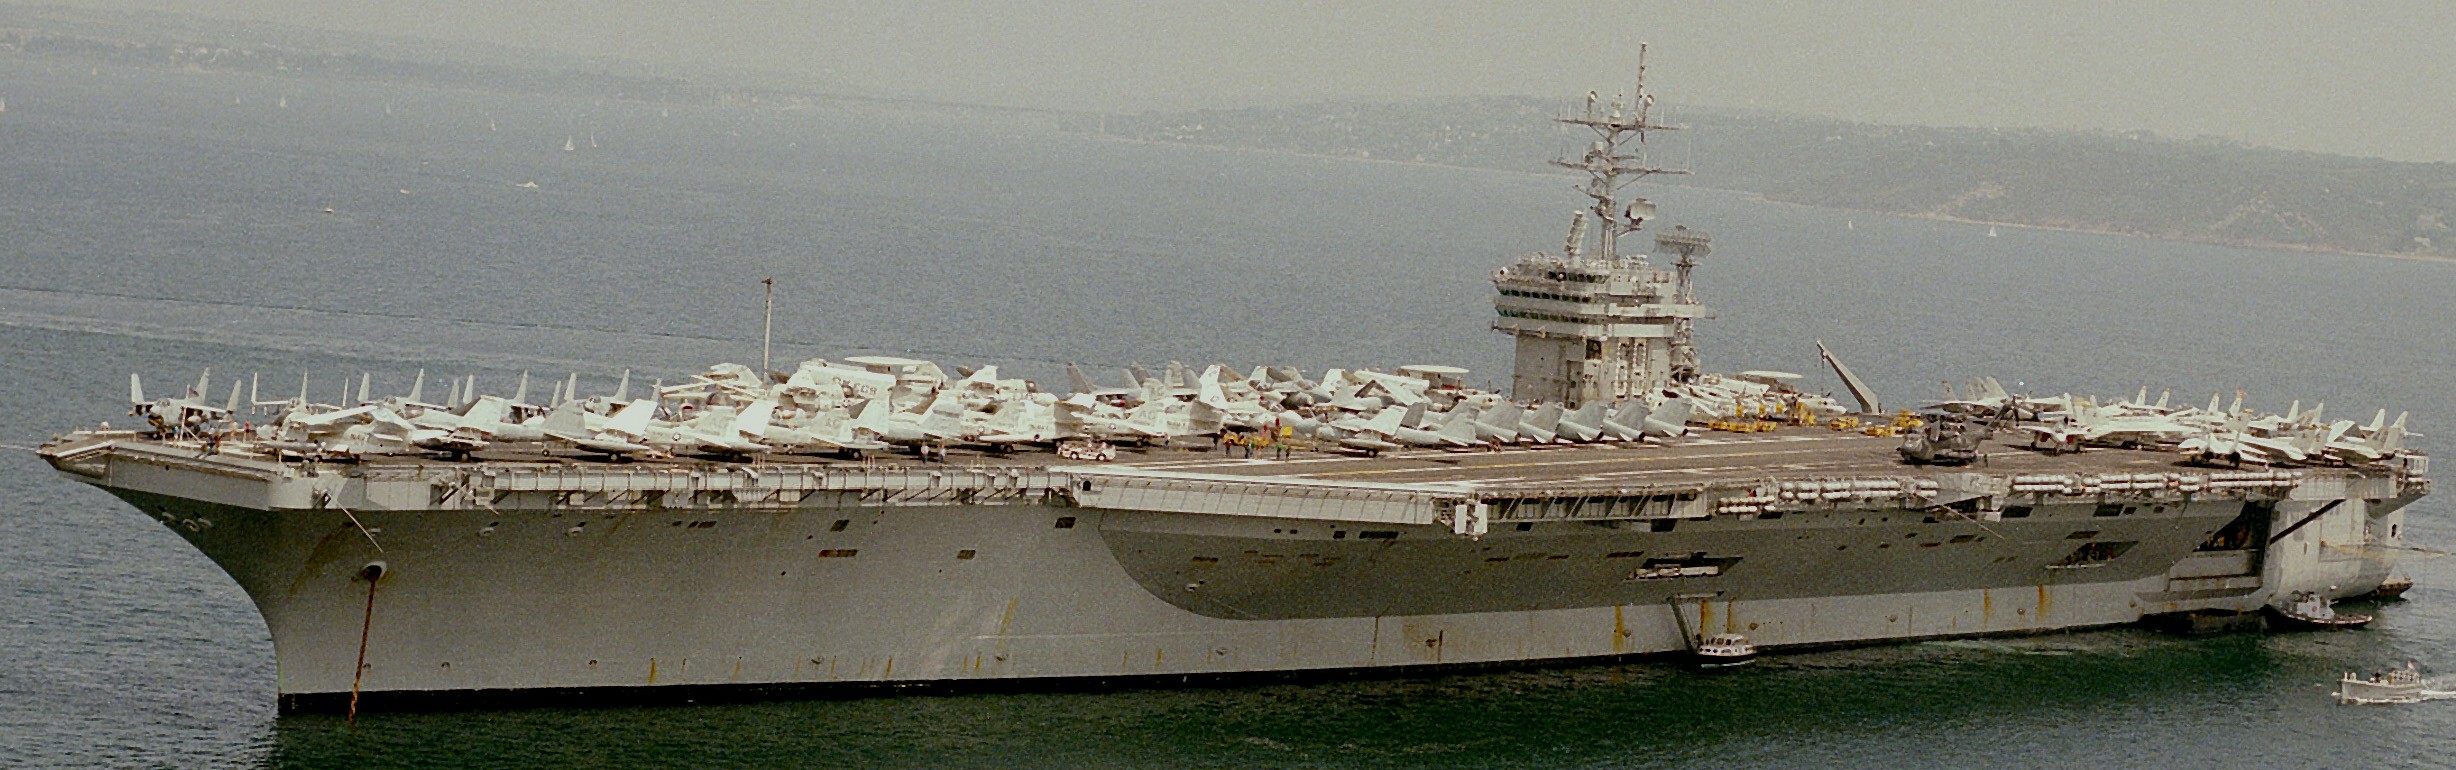 cvn-69 uss dwight d. eisenhower aircraft carrier air wing cvw-7 athens greece 1980 505